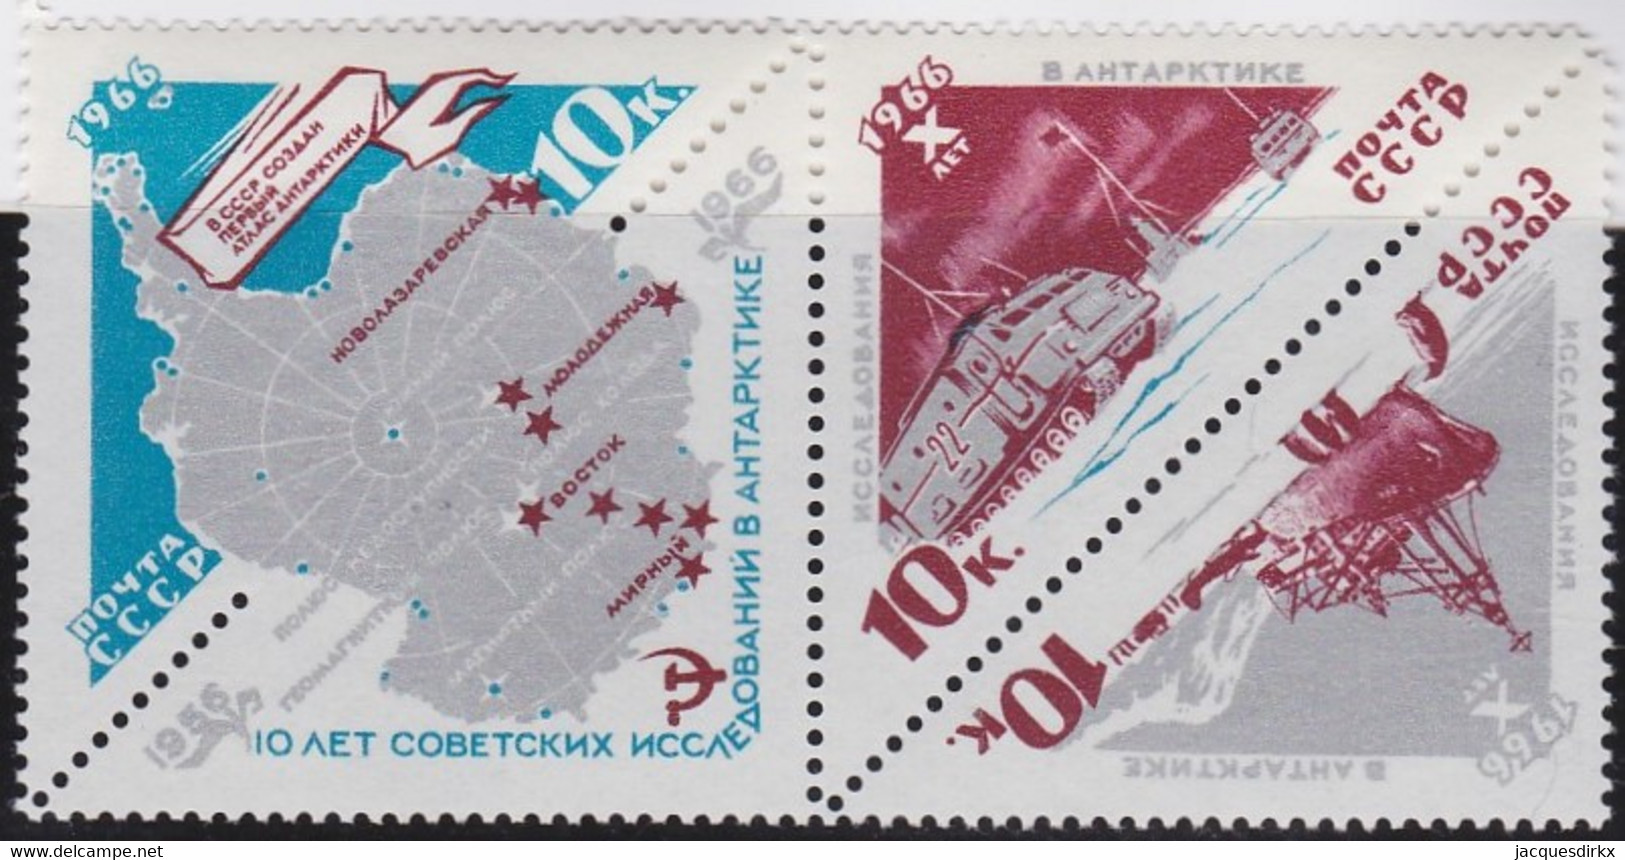 Russland     ,   Yvert      .    3065/3067    .     **  .     Postfrisch   .    /   .   MNH - Unused Stamps